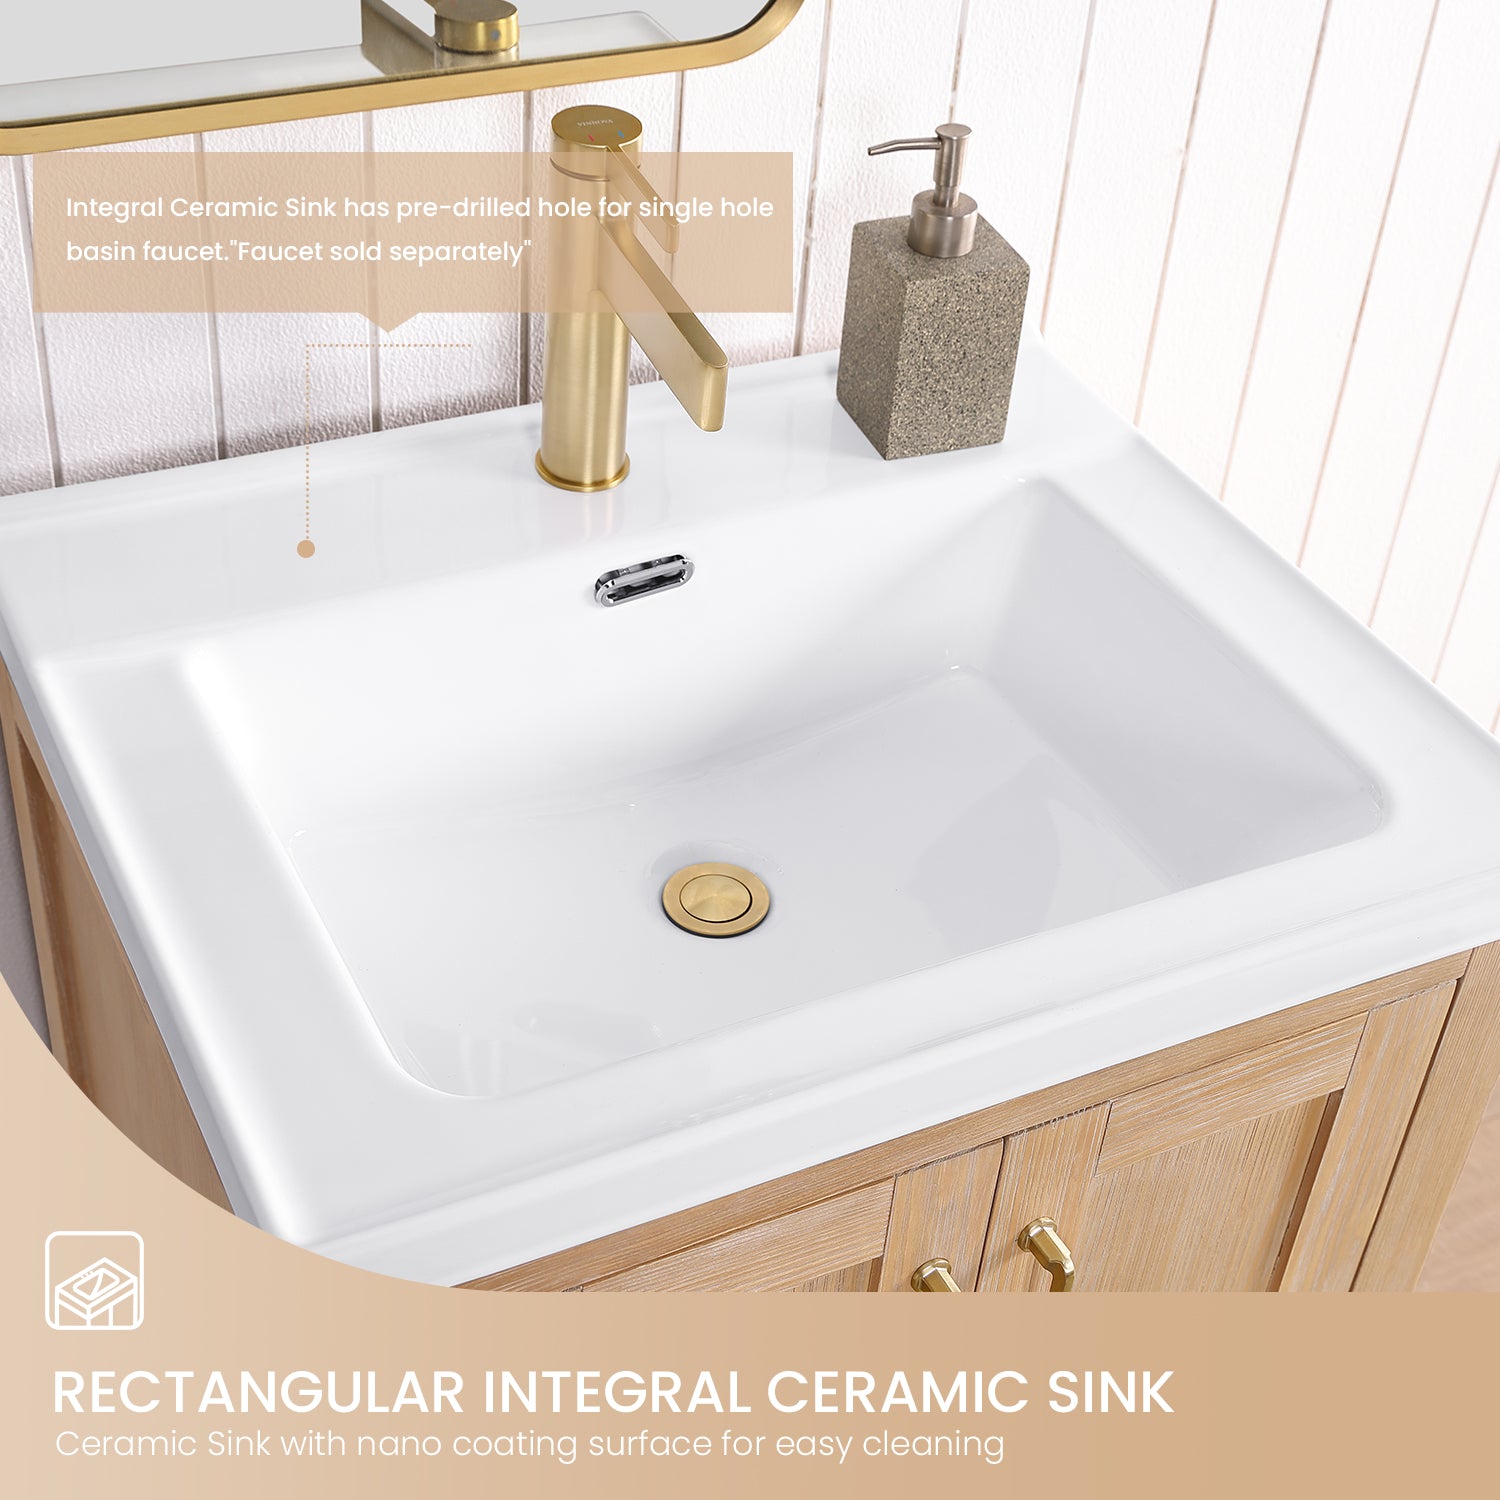 Gela 24" Single Sink Bath Vanity in Fir Wood Brown with Drop-In White Ceramic Basin